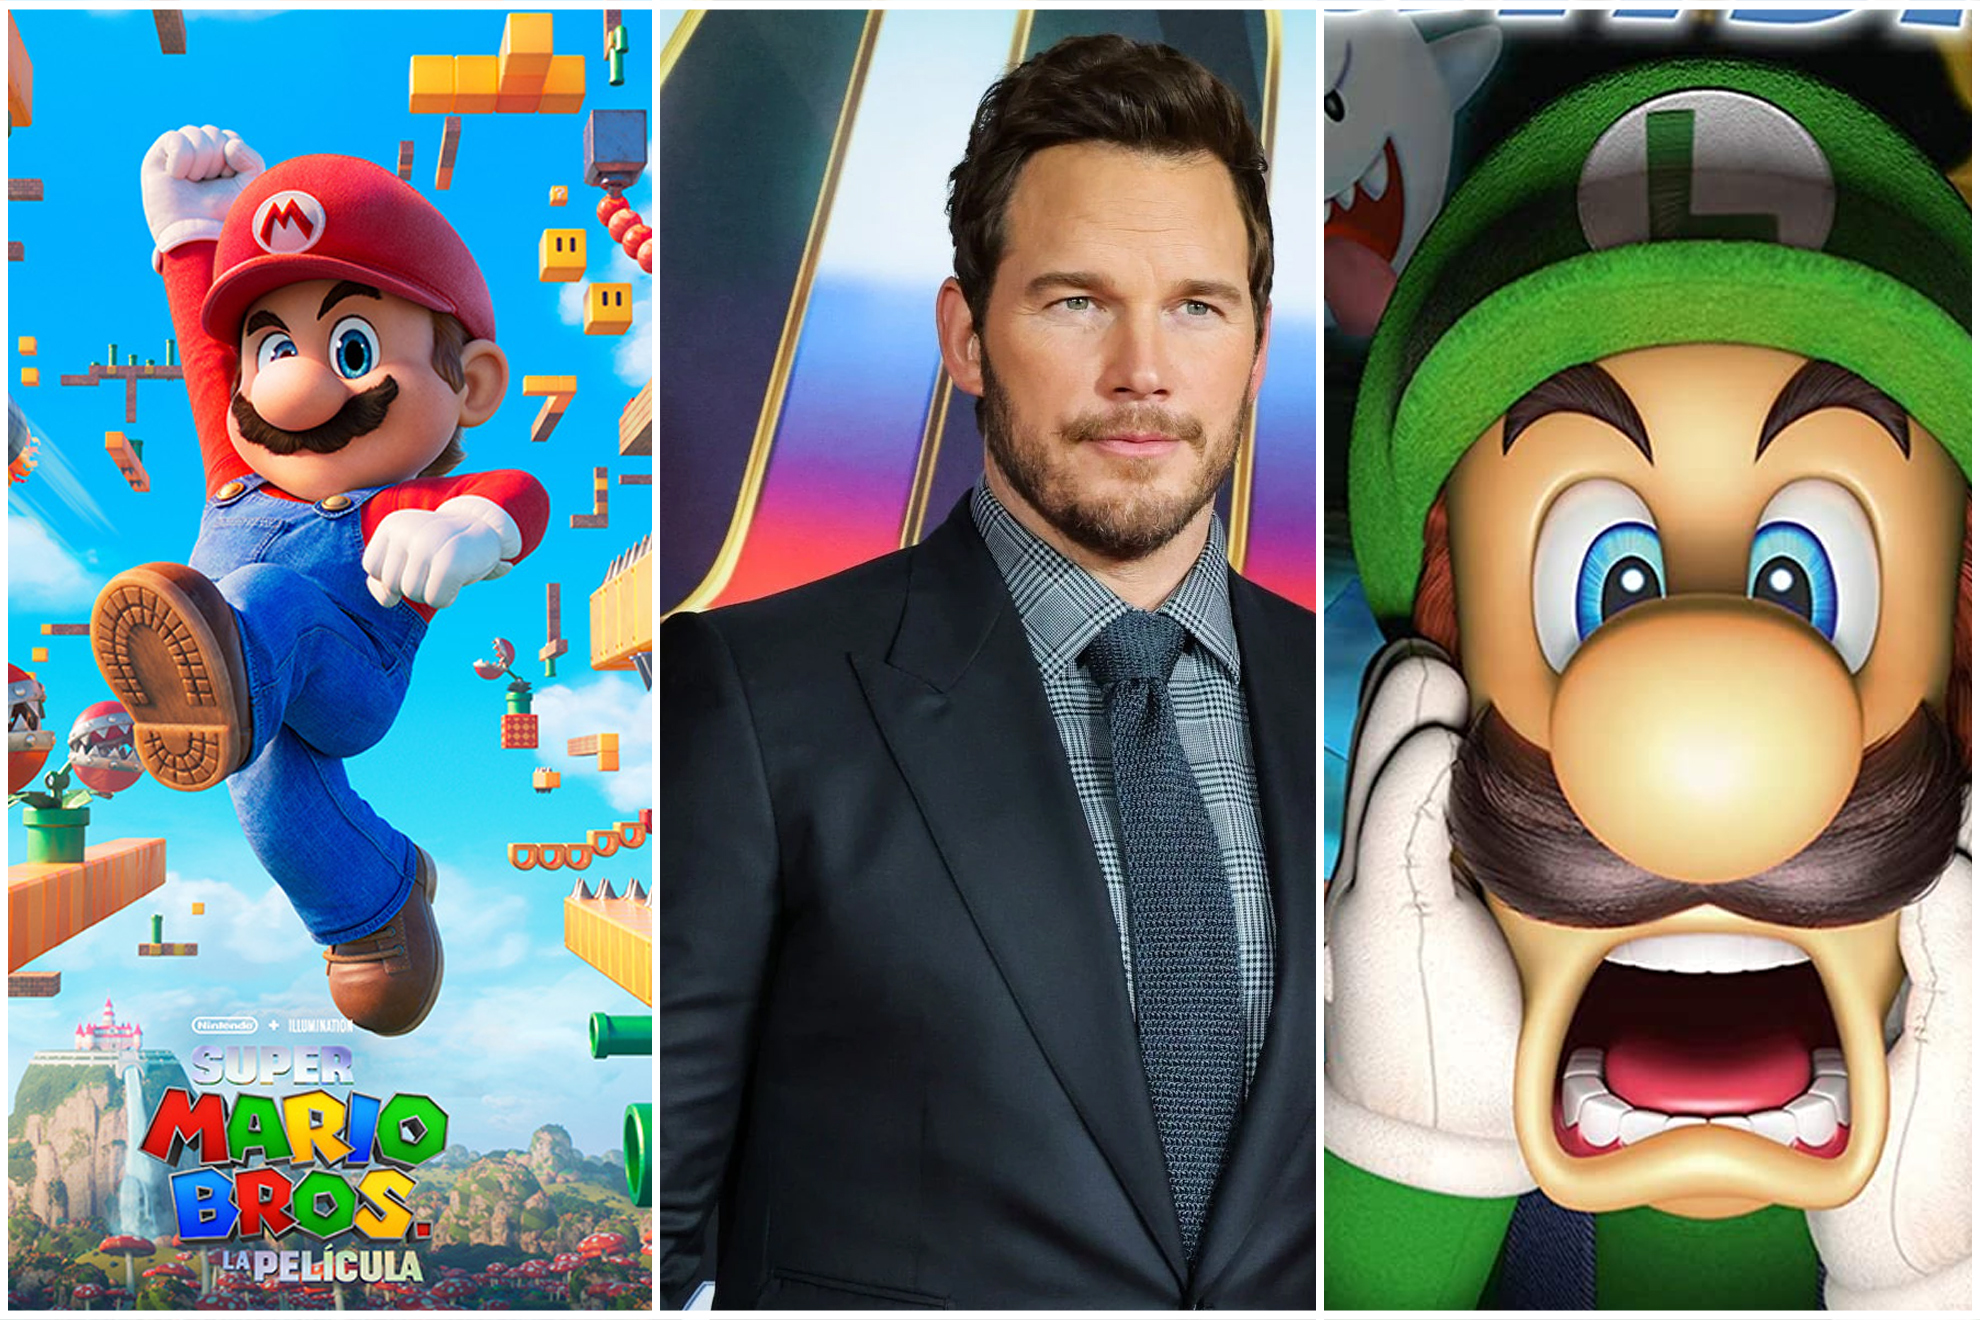 La película de Super Mario Bros podría tener secuela según Chris Patt: 